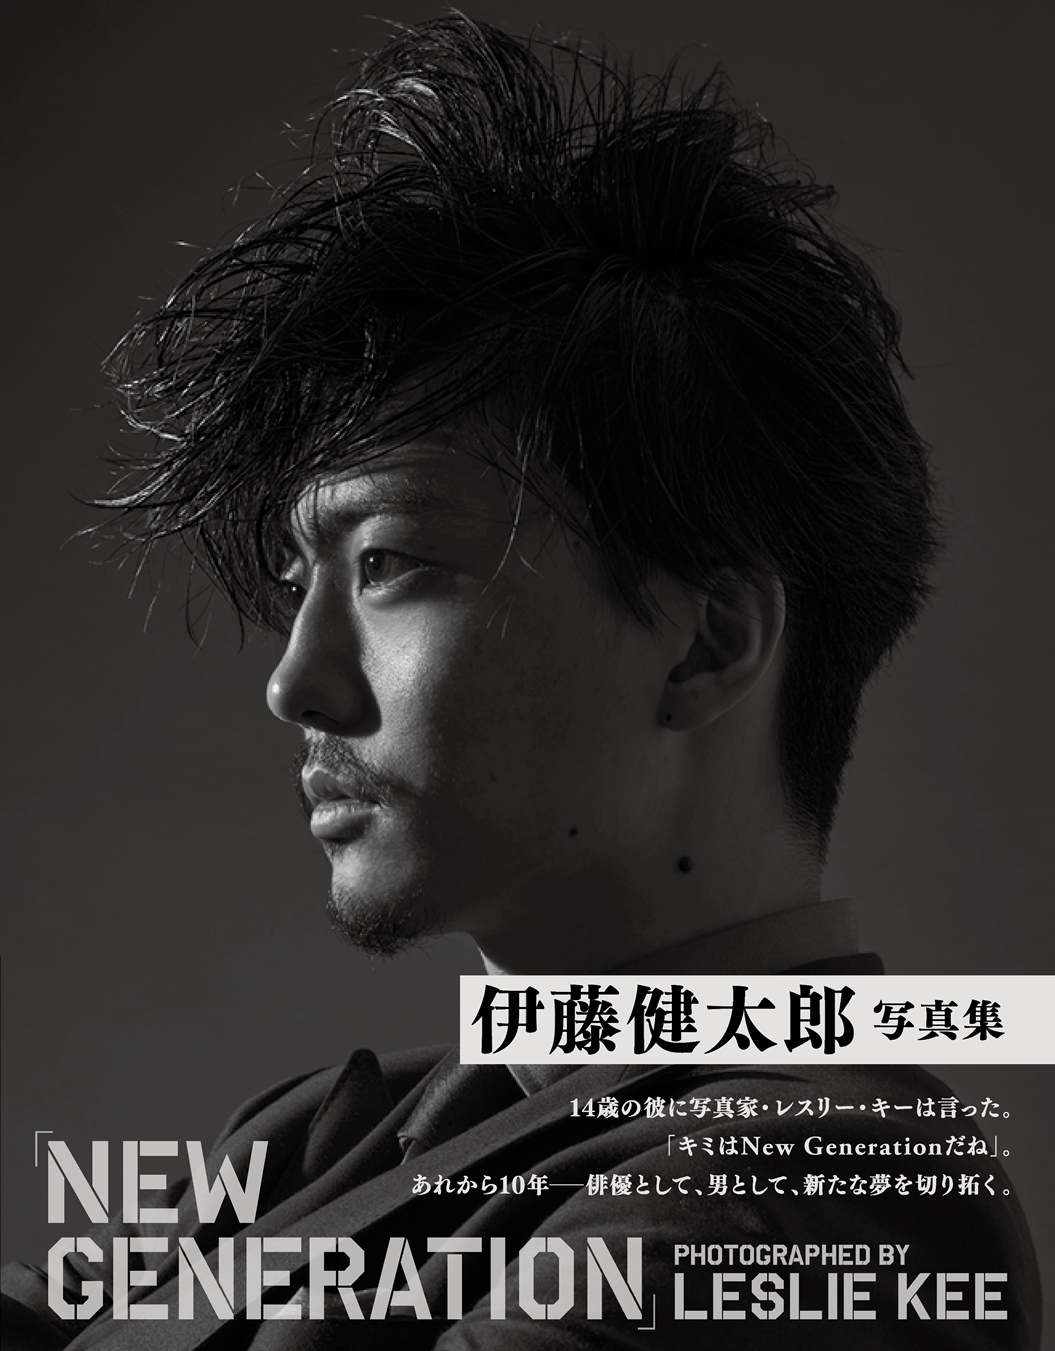 俳優・伊藤健太郎が写真集発売イベントで今年を総括したコメントを発表